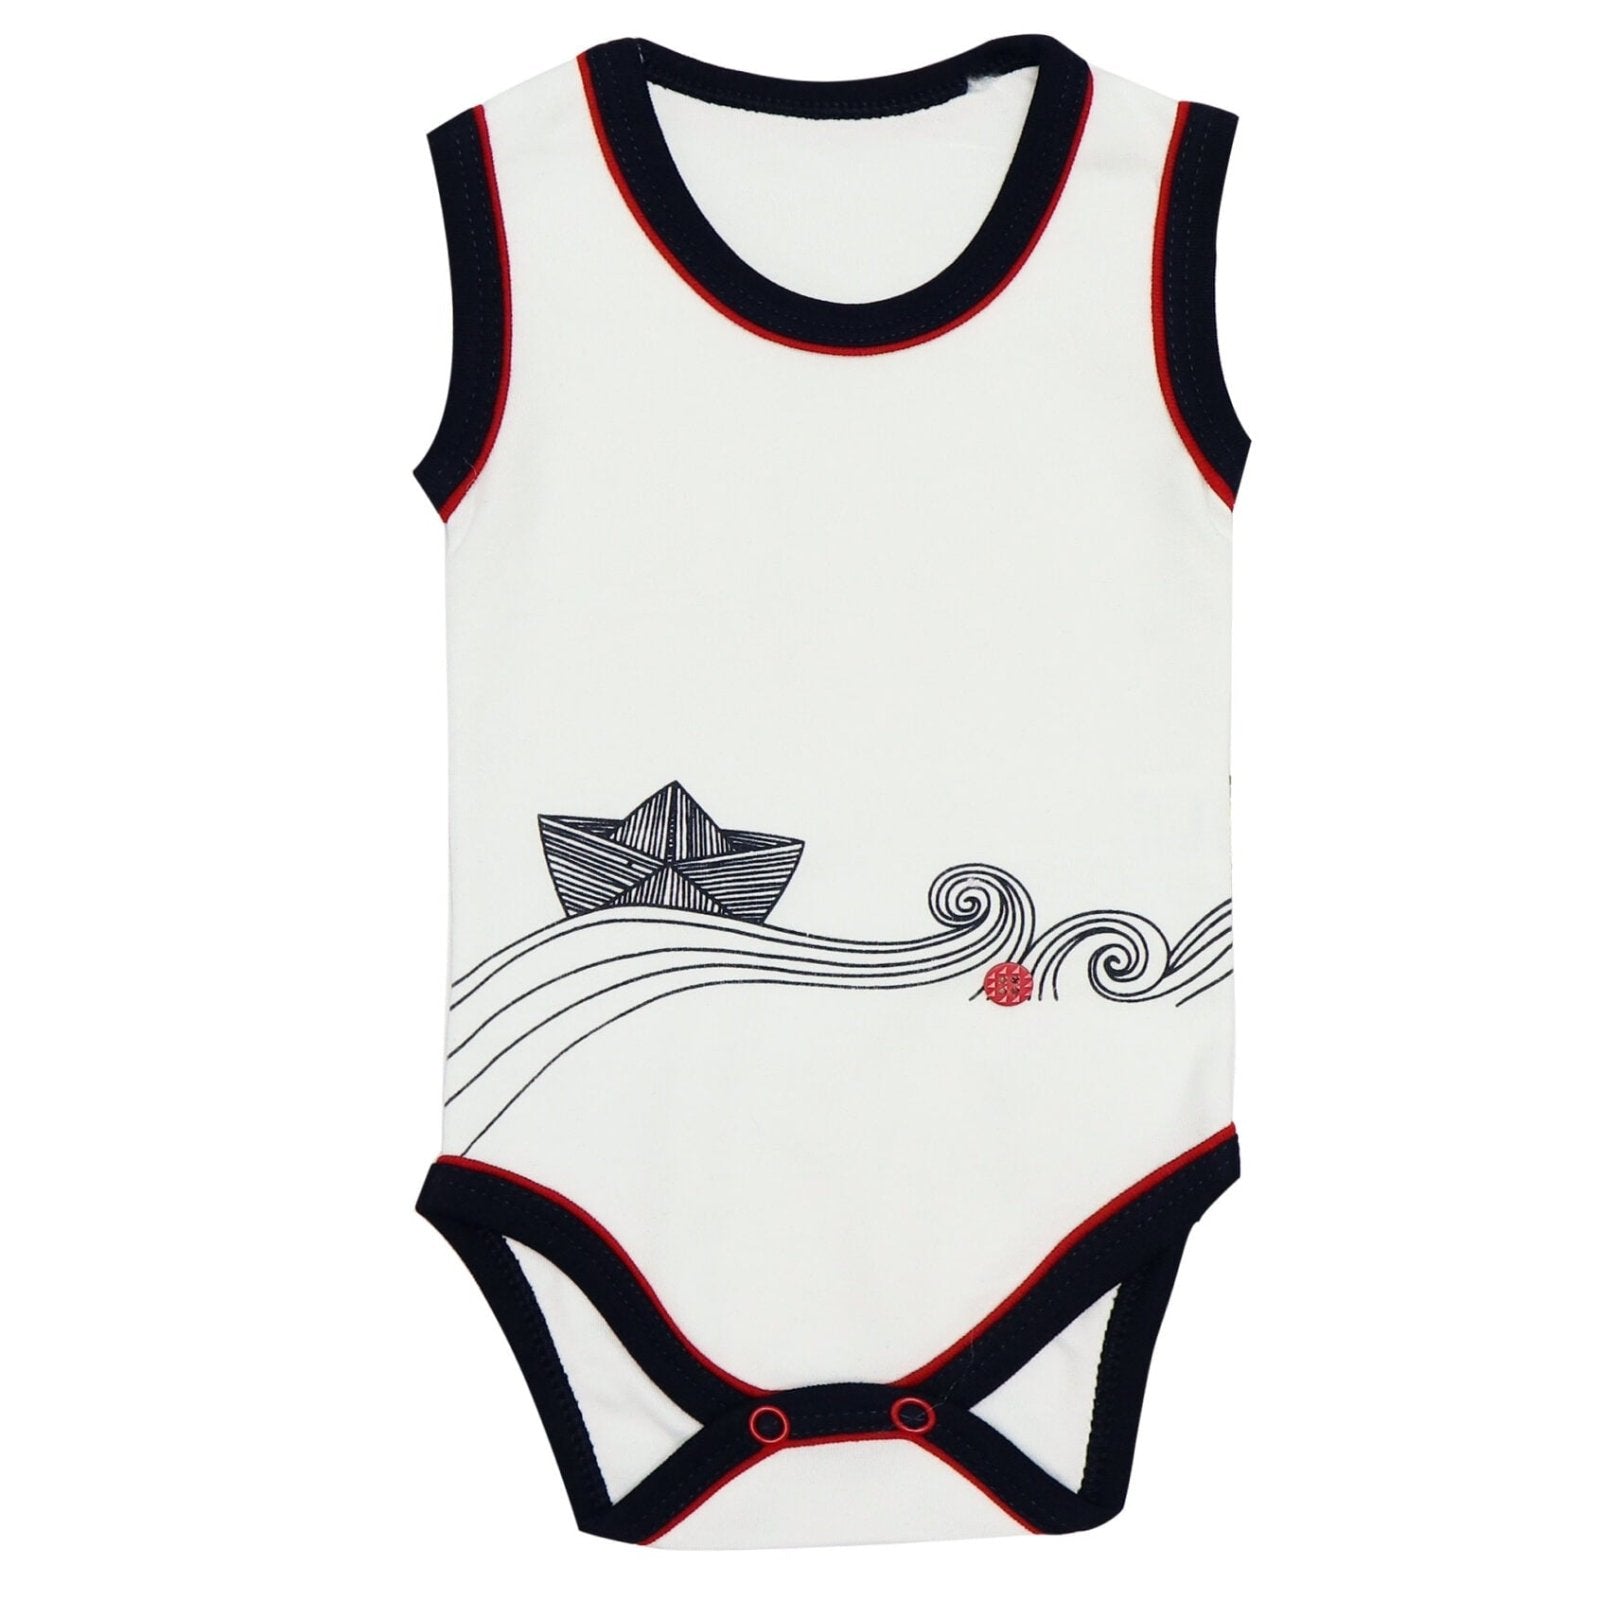 Baby Bodysuit Boat Print Black